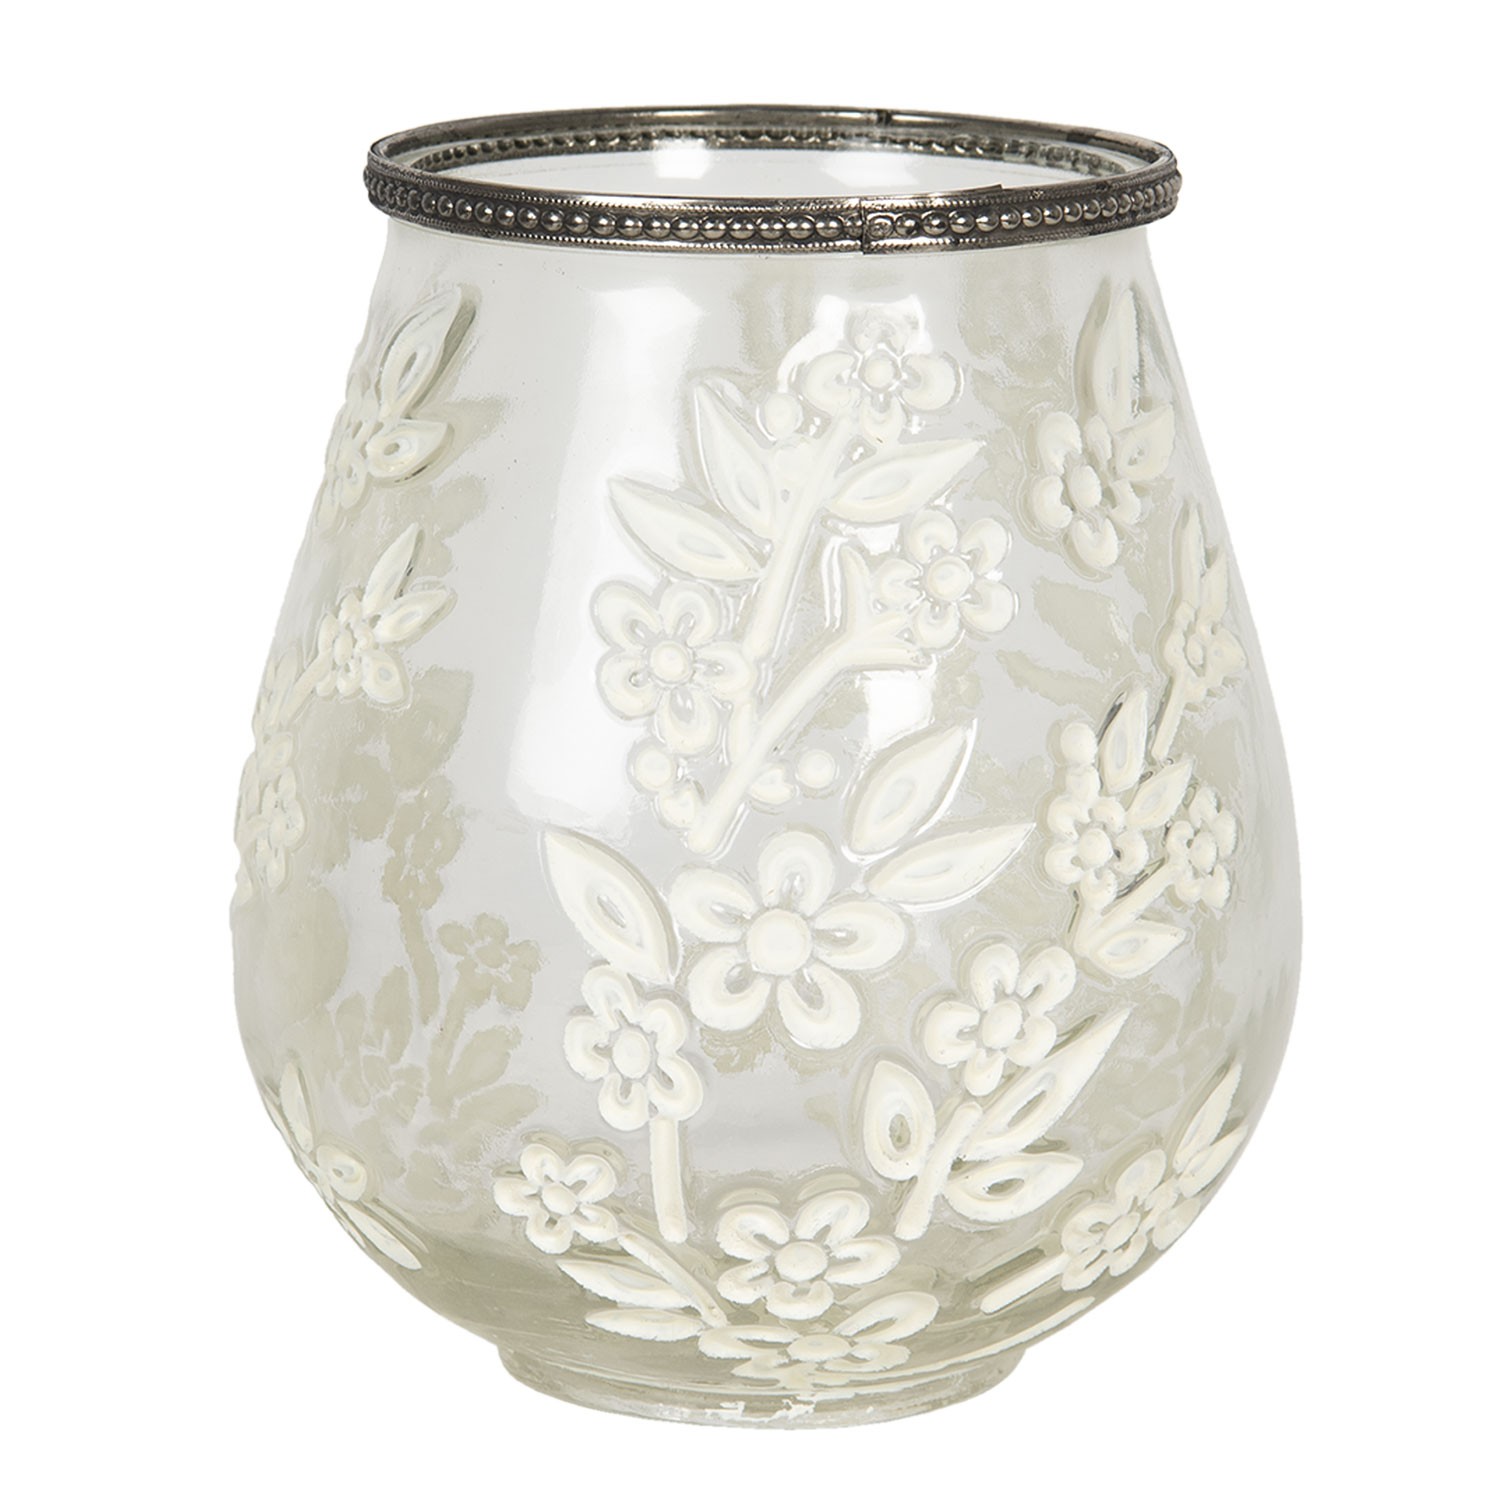 Skleněný bílý svícen / váza s květy a zdobeným hrdlem - Ø 12*13 cm Clayre & Eef